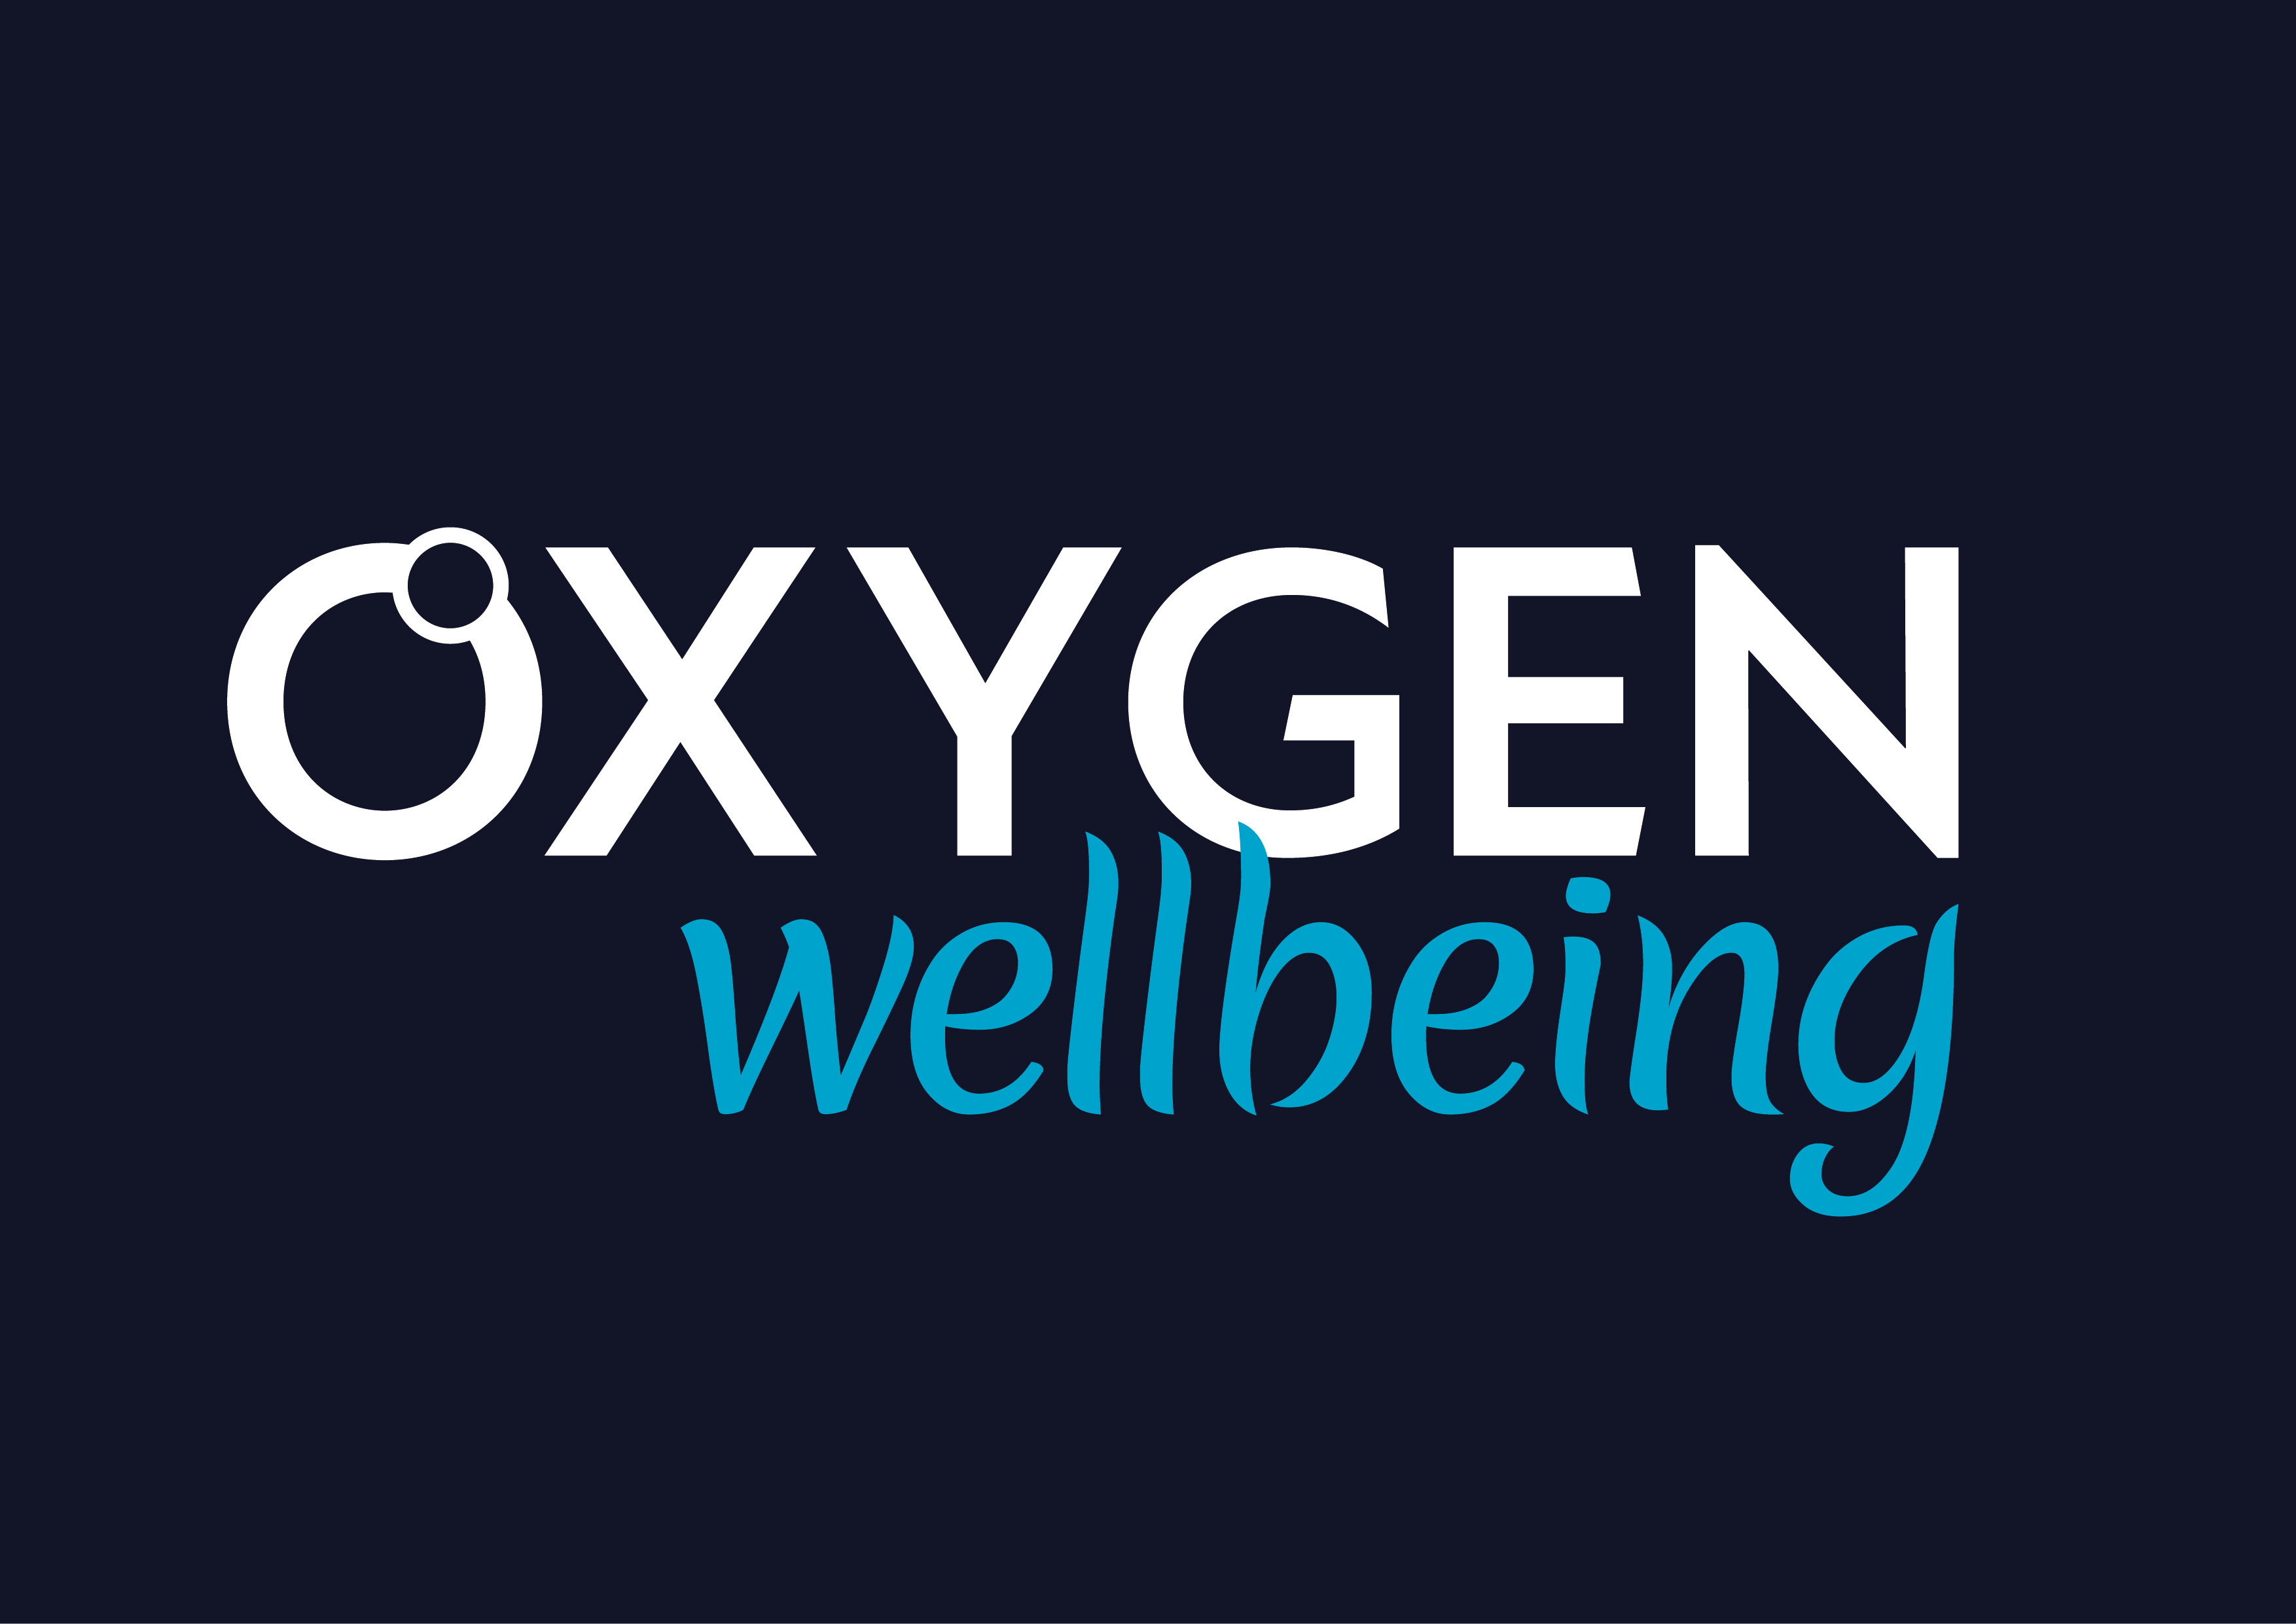 Oxygen Wellbeing on dark blue background